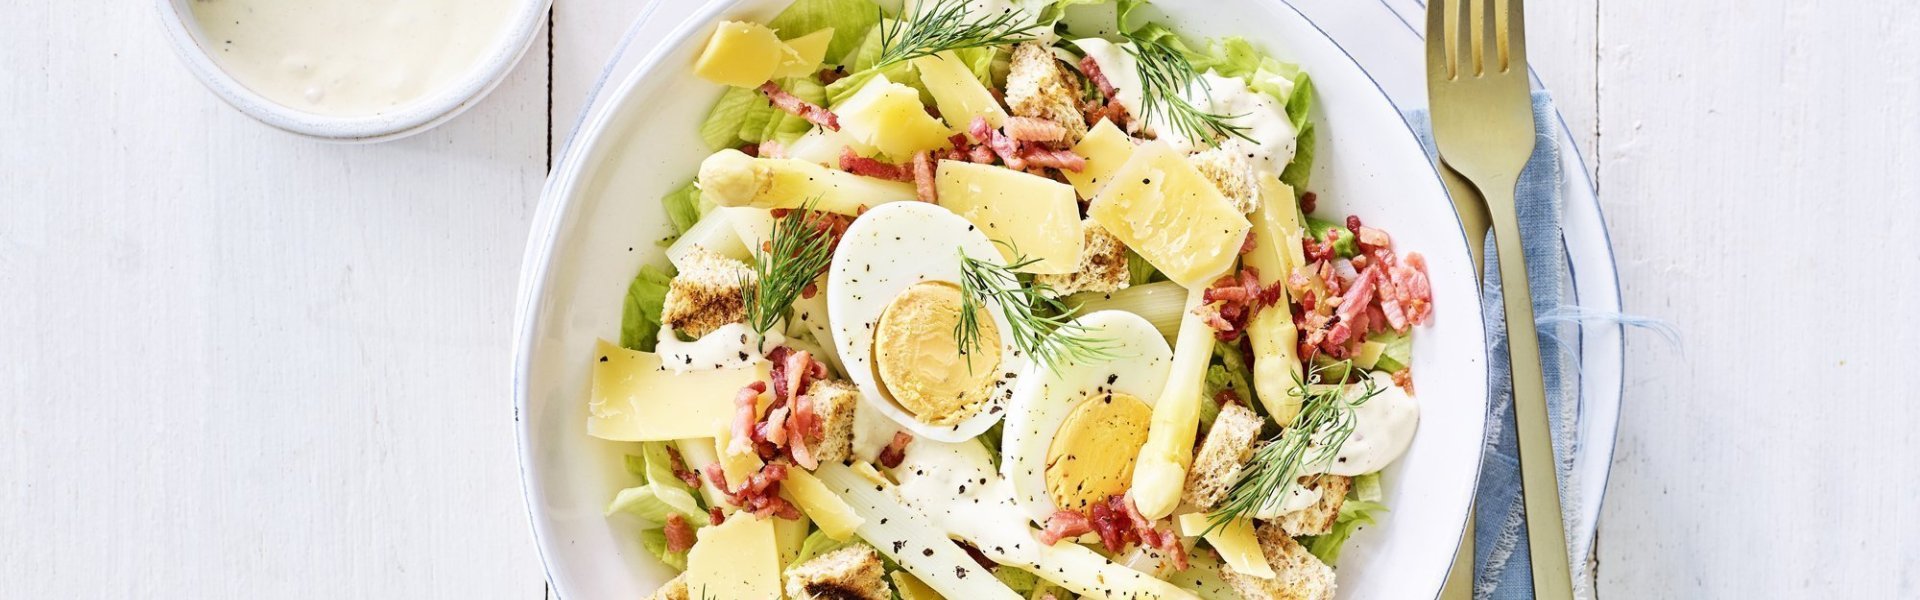 Een rijkgevulde salade staat klaar op tafel. Het witte bord is gevuld met sla, gekookte eitjes, stukjes asperges en kaasschilfers. Dat is de lente proeven in je bord, als je het mij vraagt!